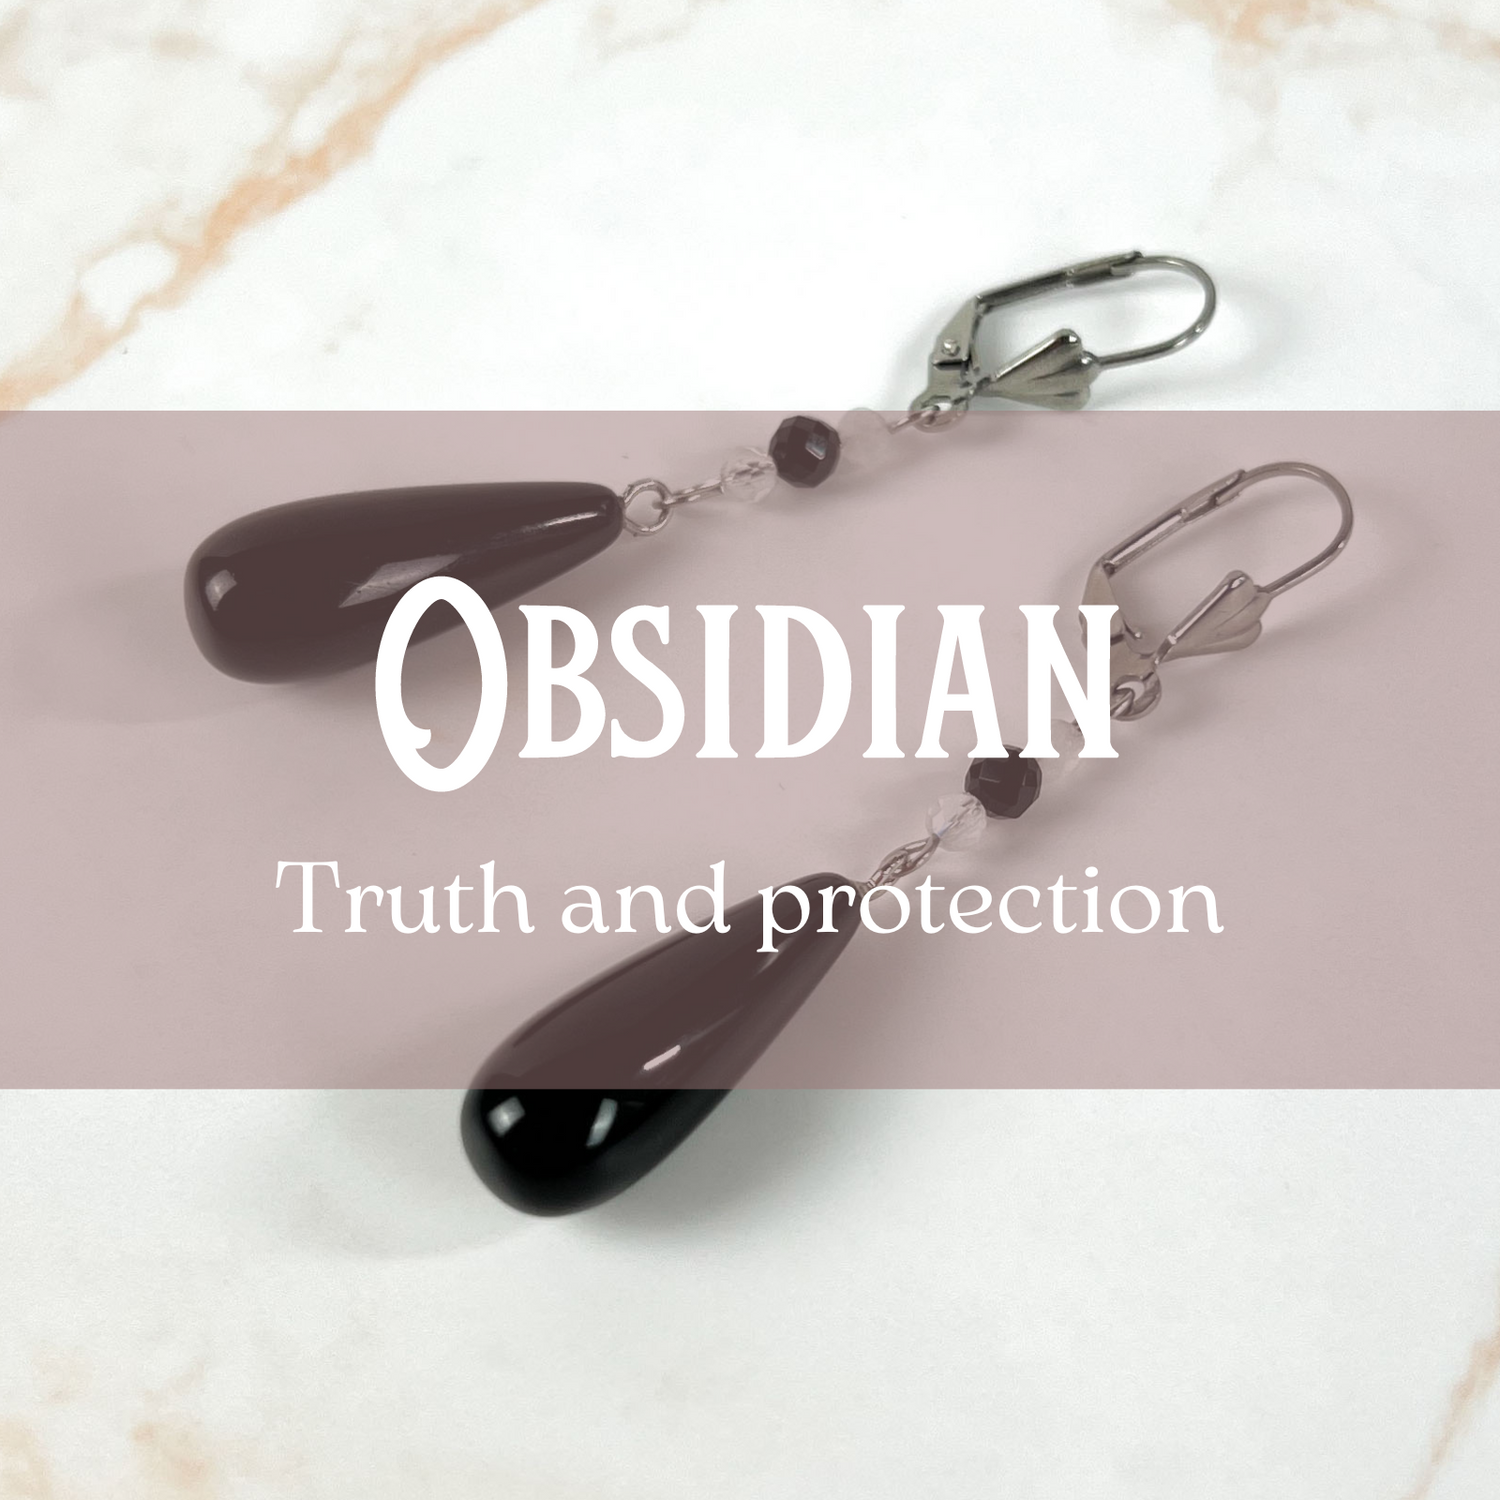 Obsidian jewelry